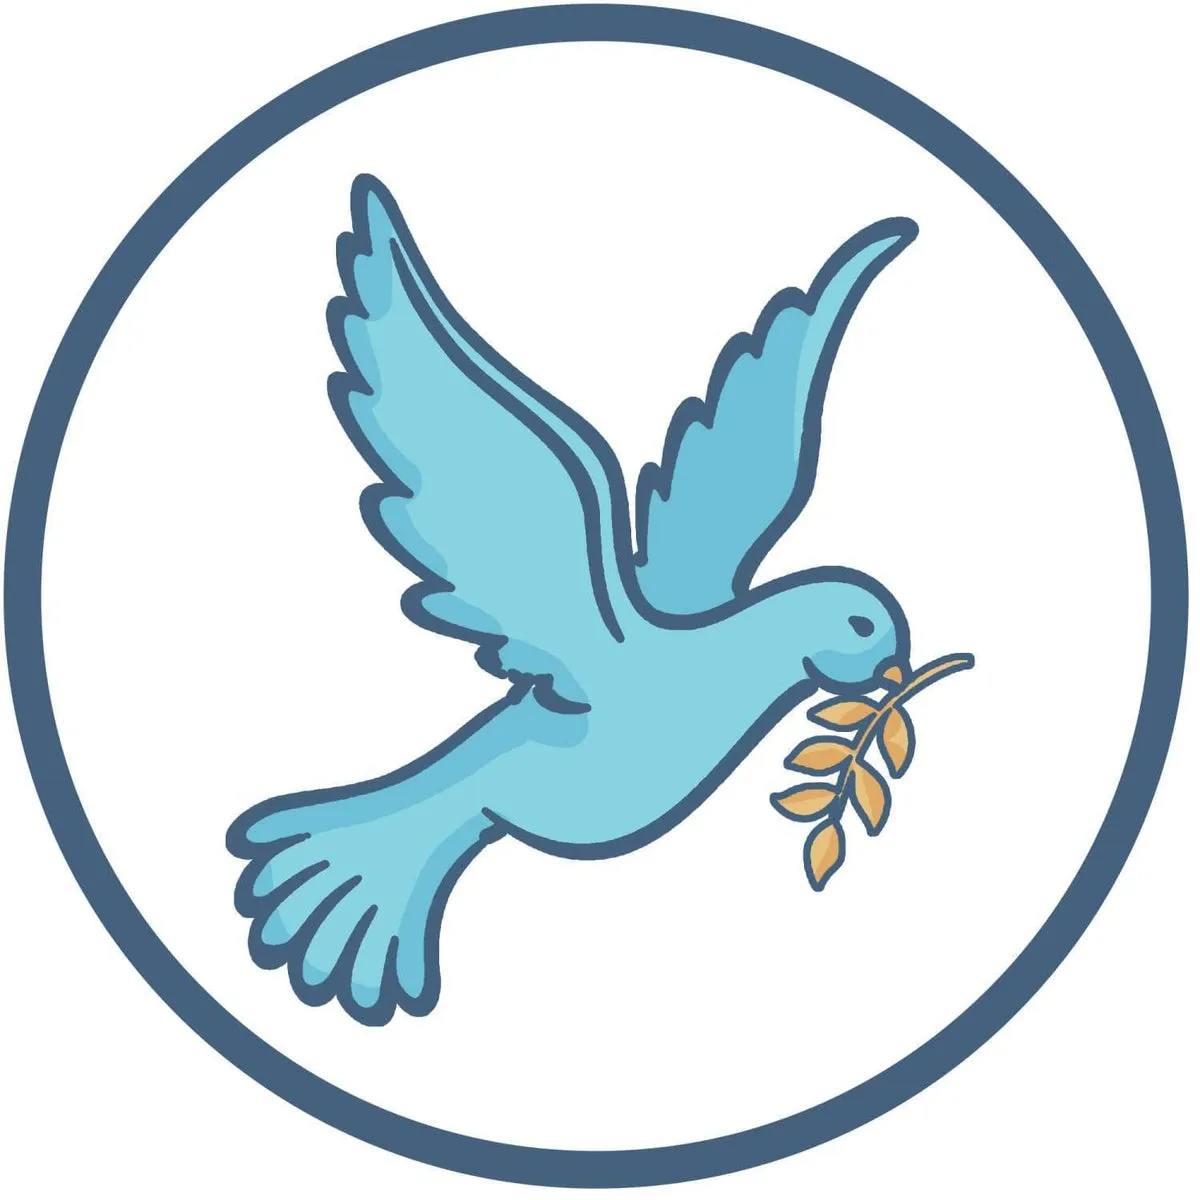 the dove symbol